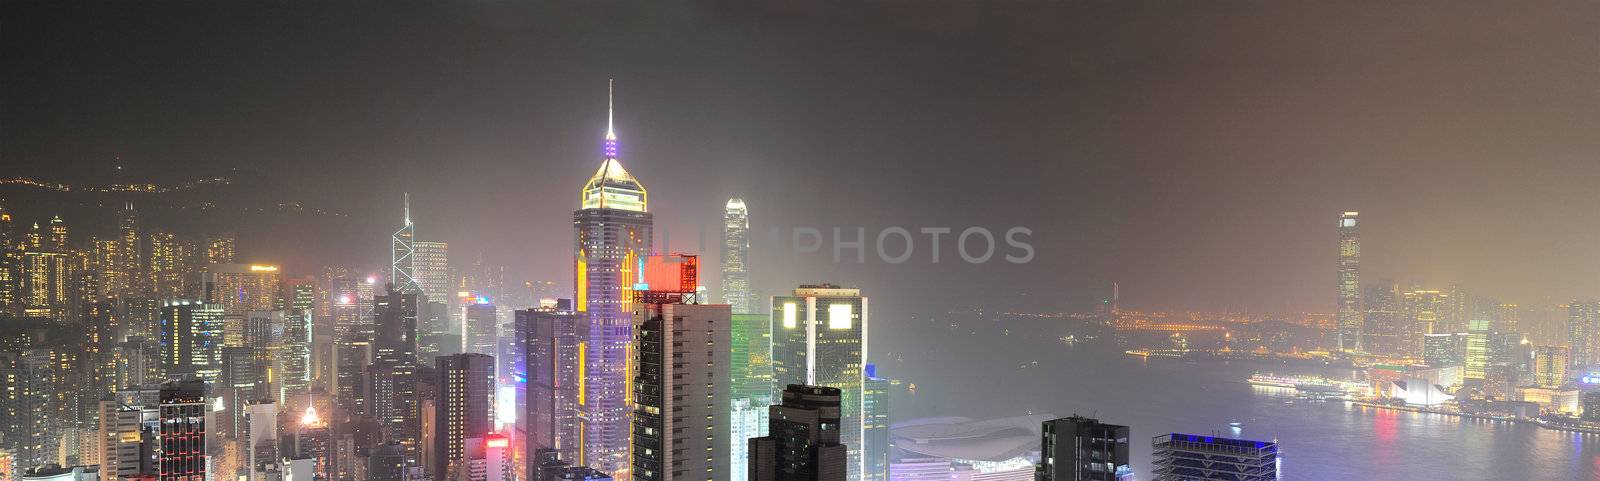 Hong Kong panorama at night. 